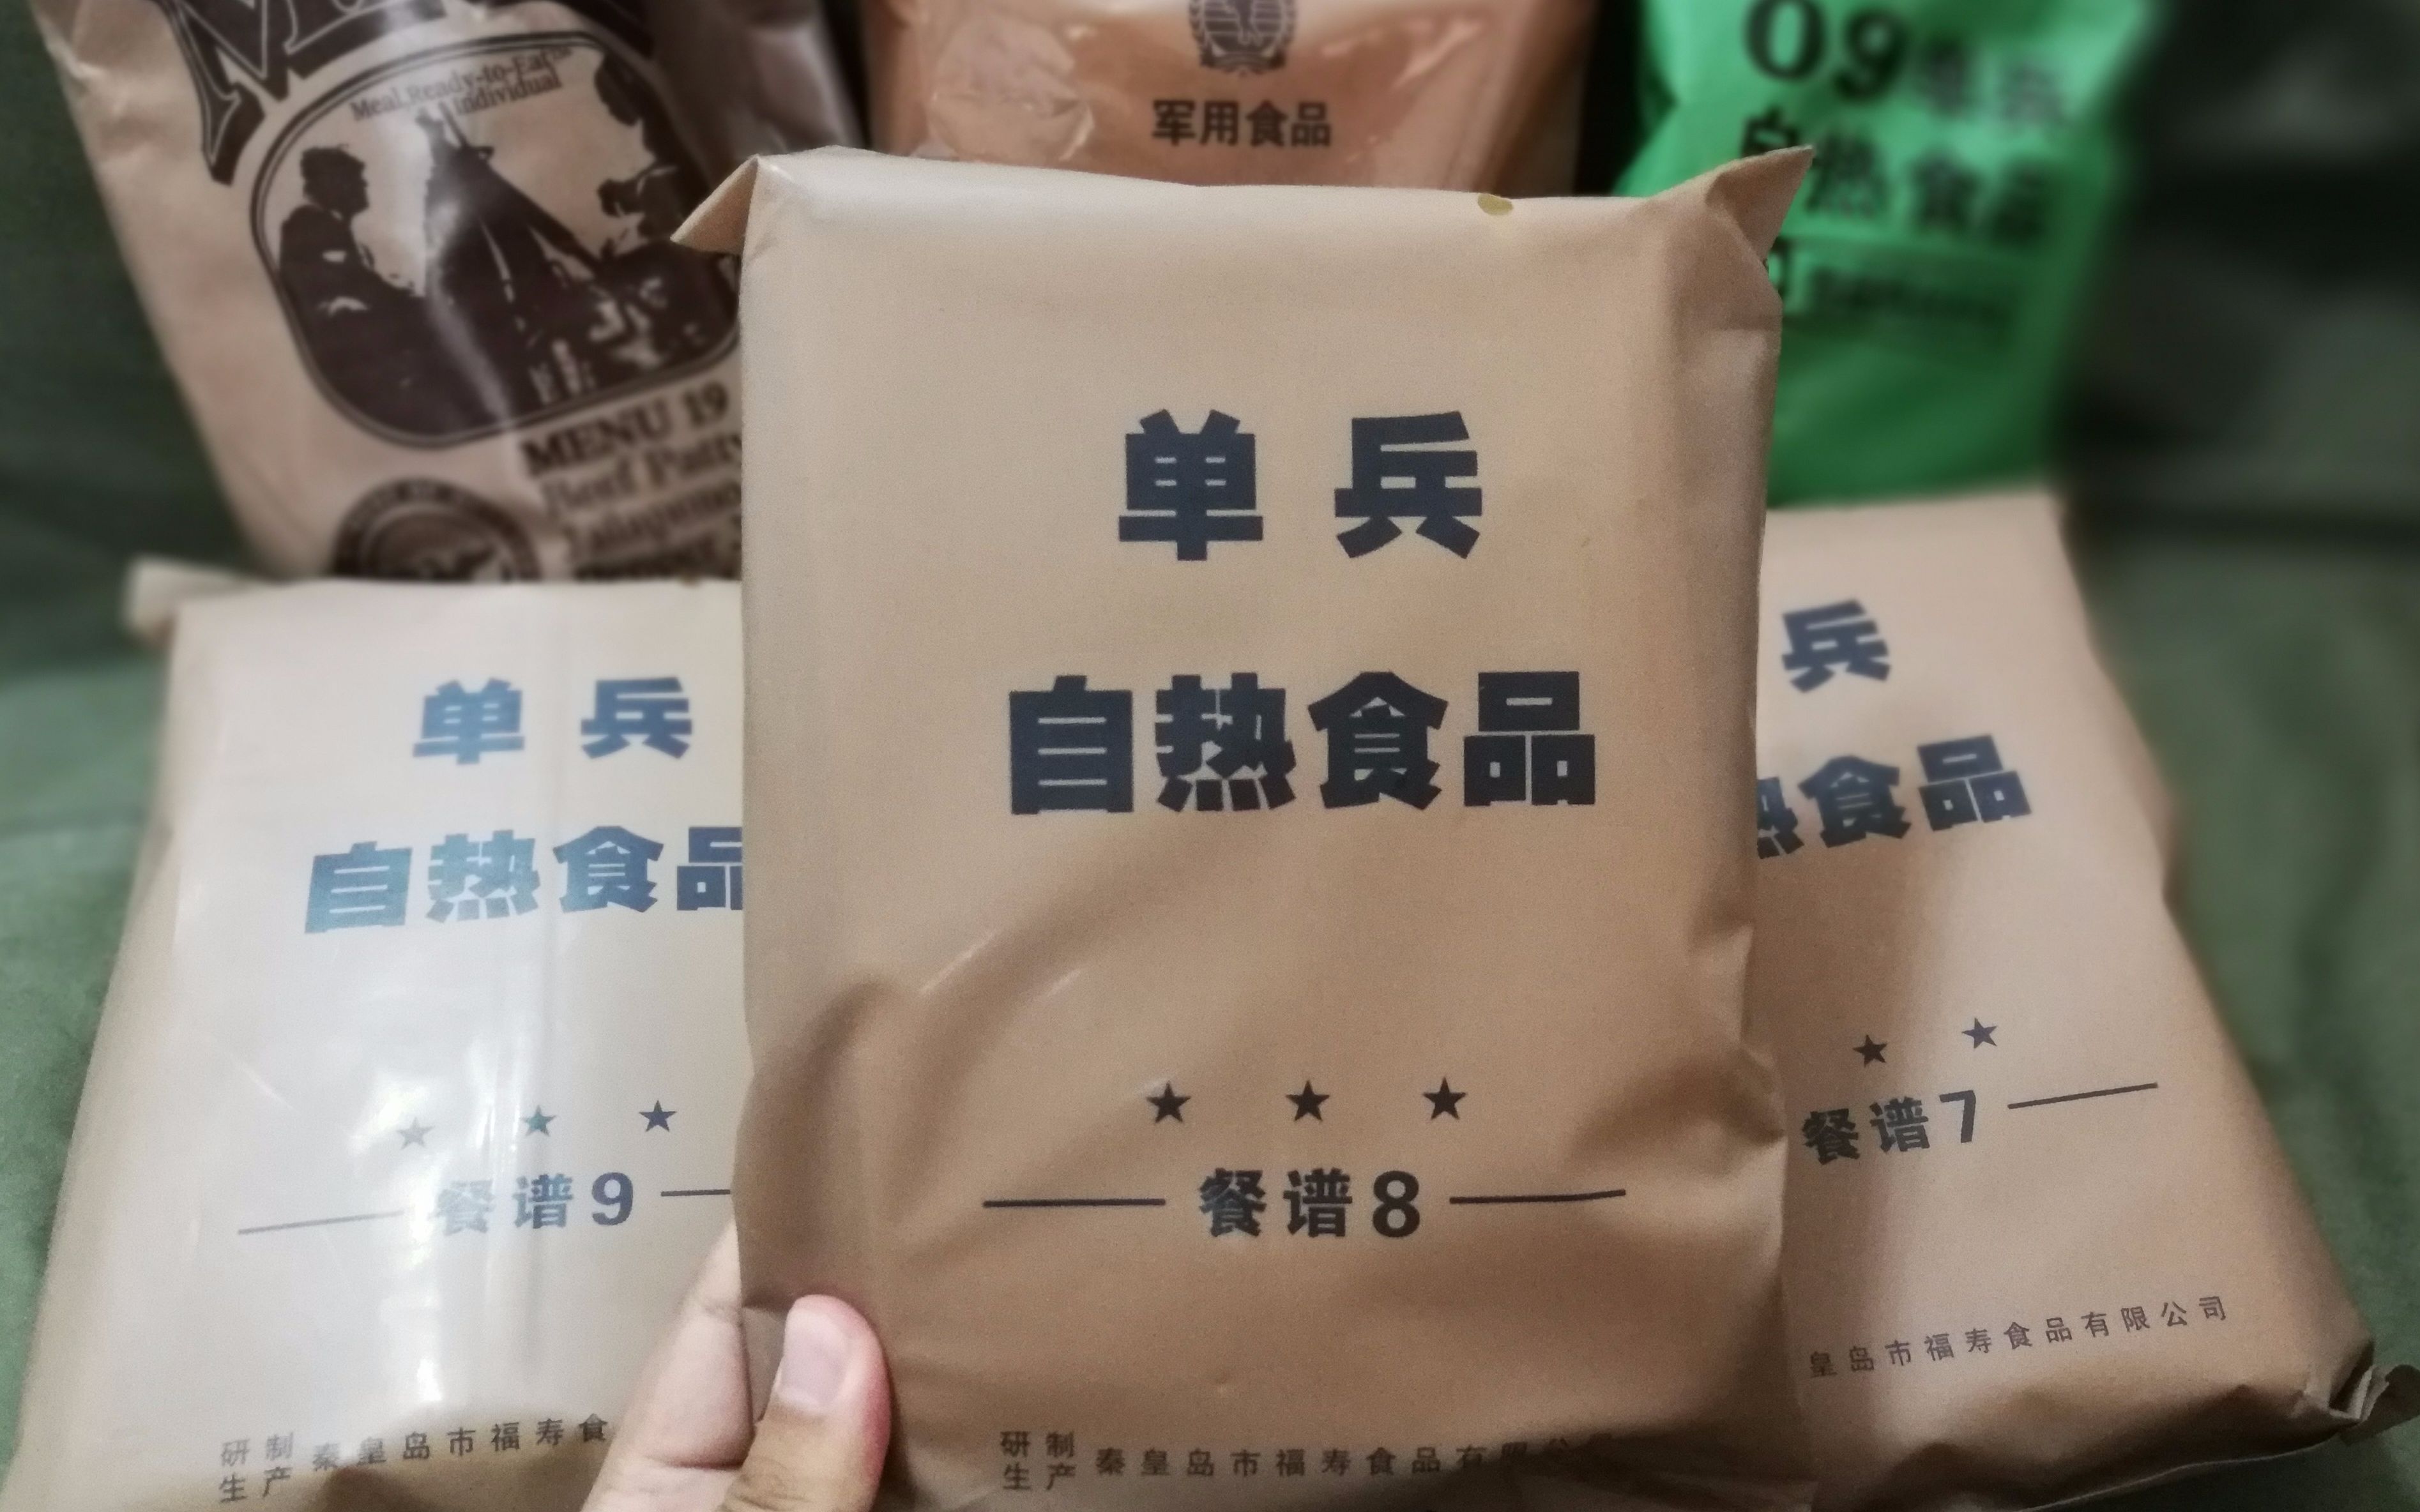 中国解放军军用食品图片